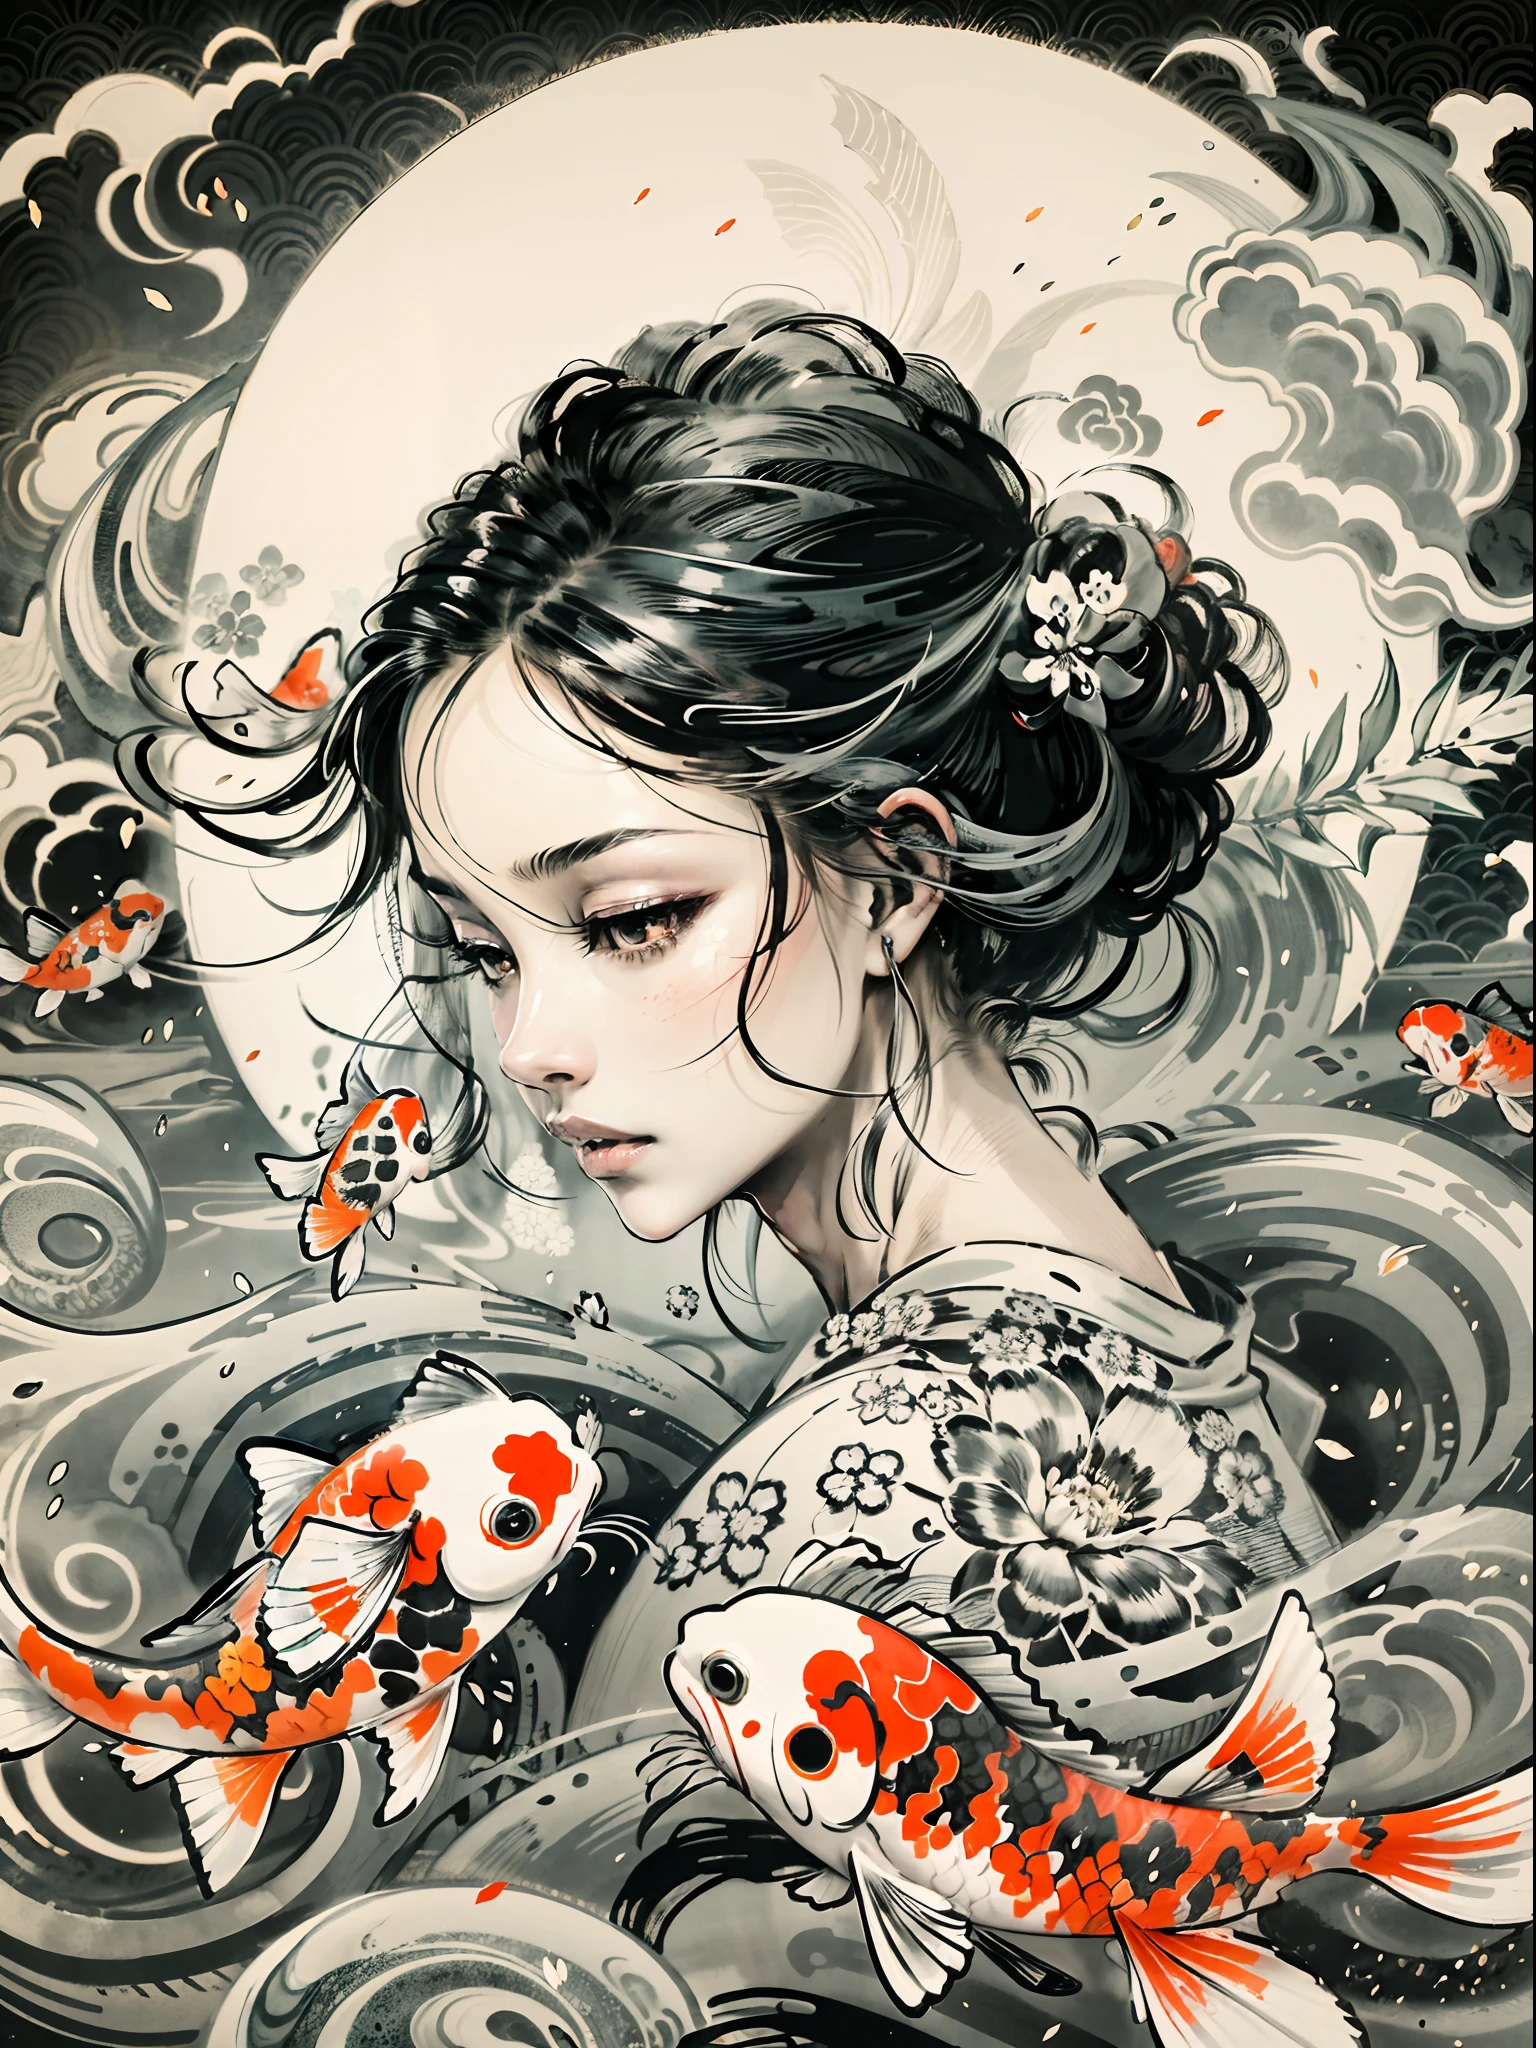 "Una fascinante representación de elegantes peces koi girando con gracia alrededor de una niña, que recuerda a una impresionante pintura japonesa en tinta blanca y negra, formando un fascinante símbolo del yin-yang en el fondo."